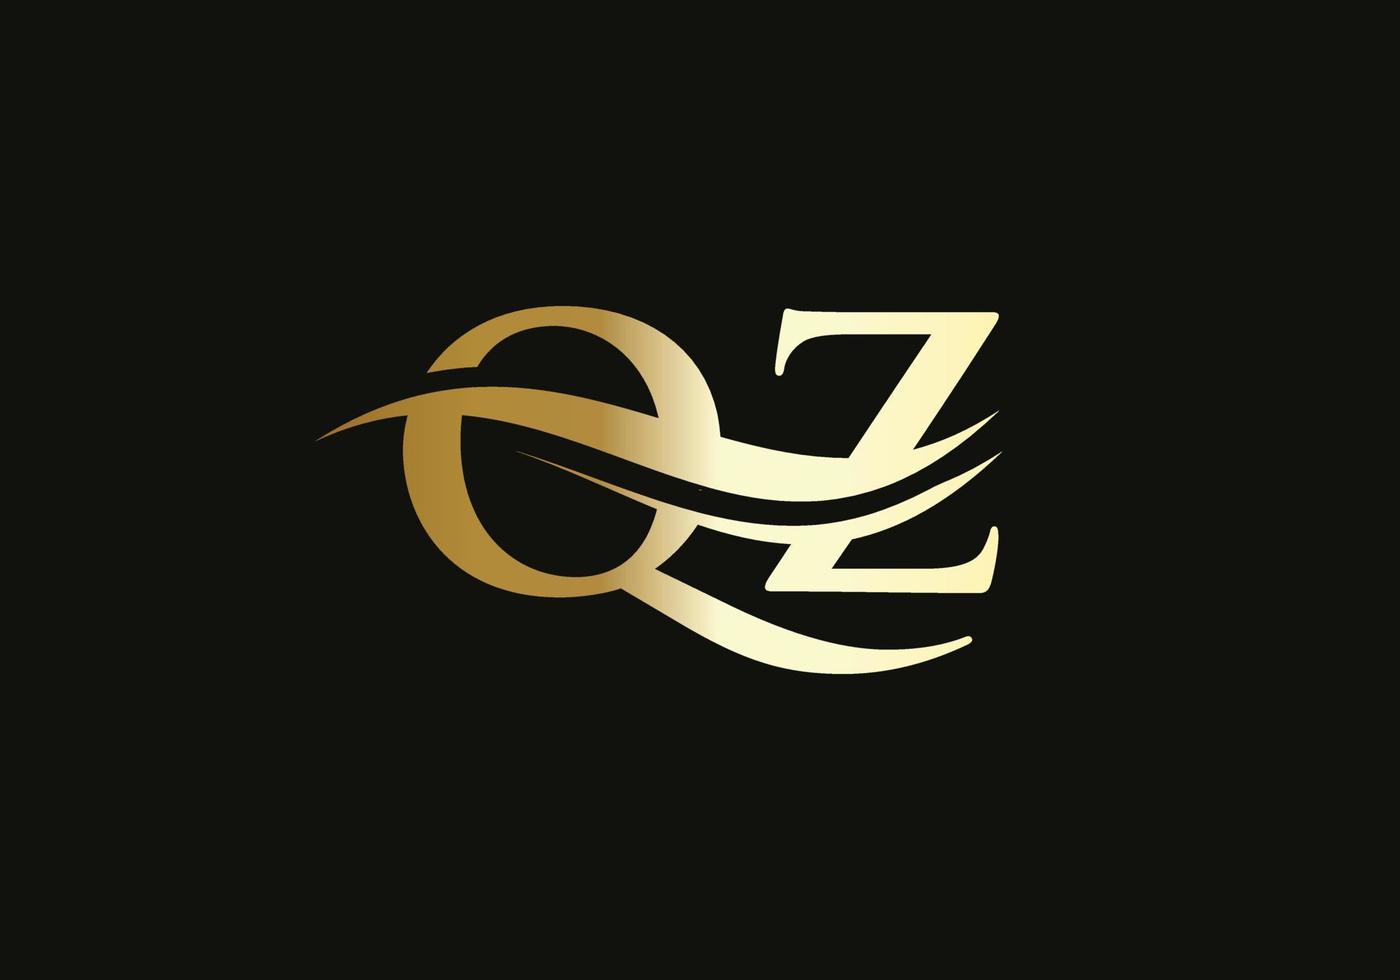 swoosh brief qz logo ontwerp voor bedrijf en bedrijf identiteit. water Golf qz logo met modern modieus vector